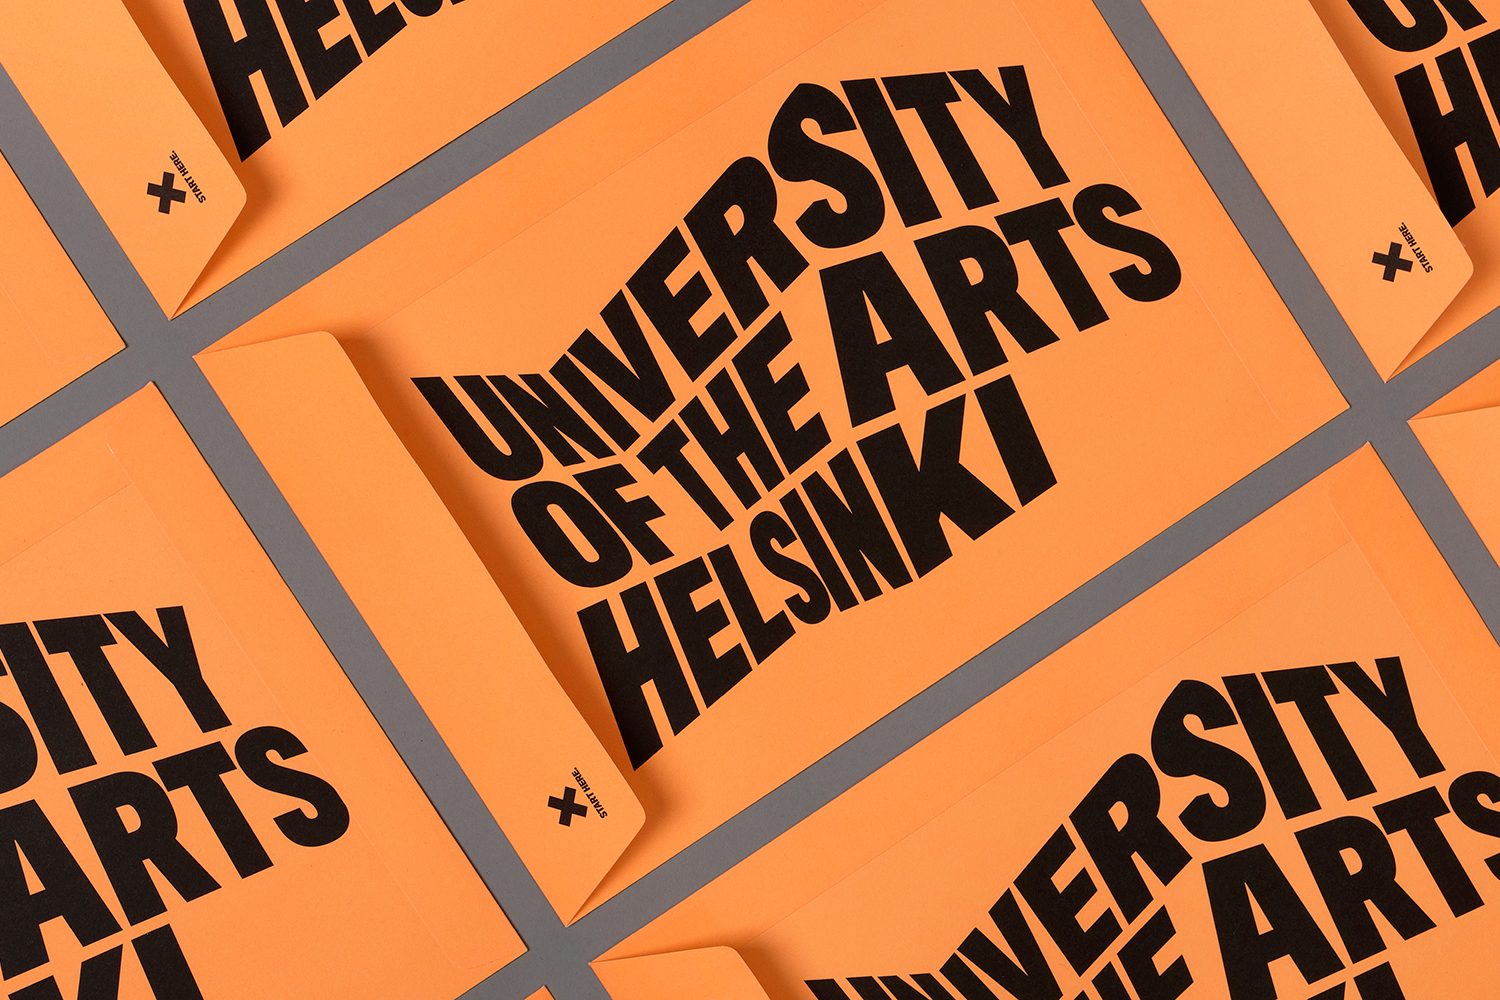 Designed by Bond – University of the Arts Helsinki